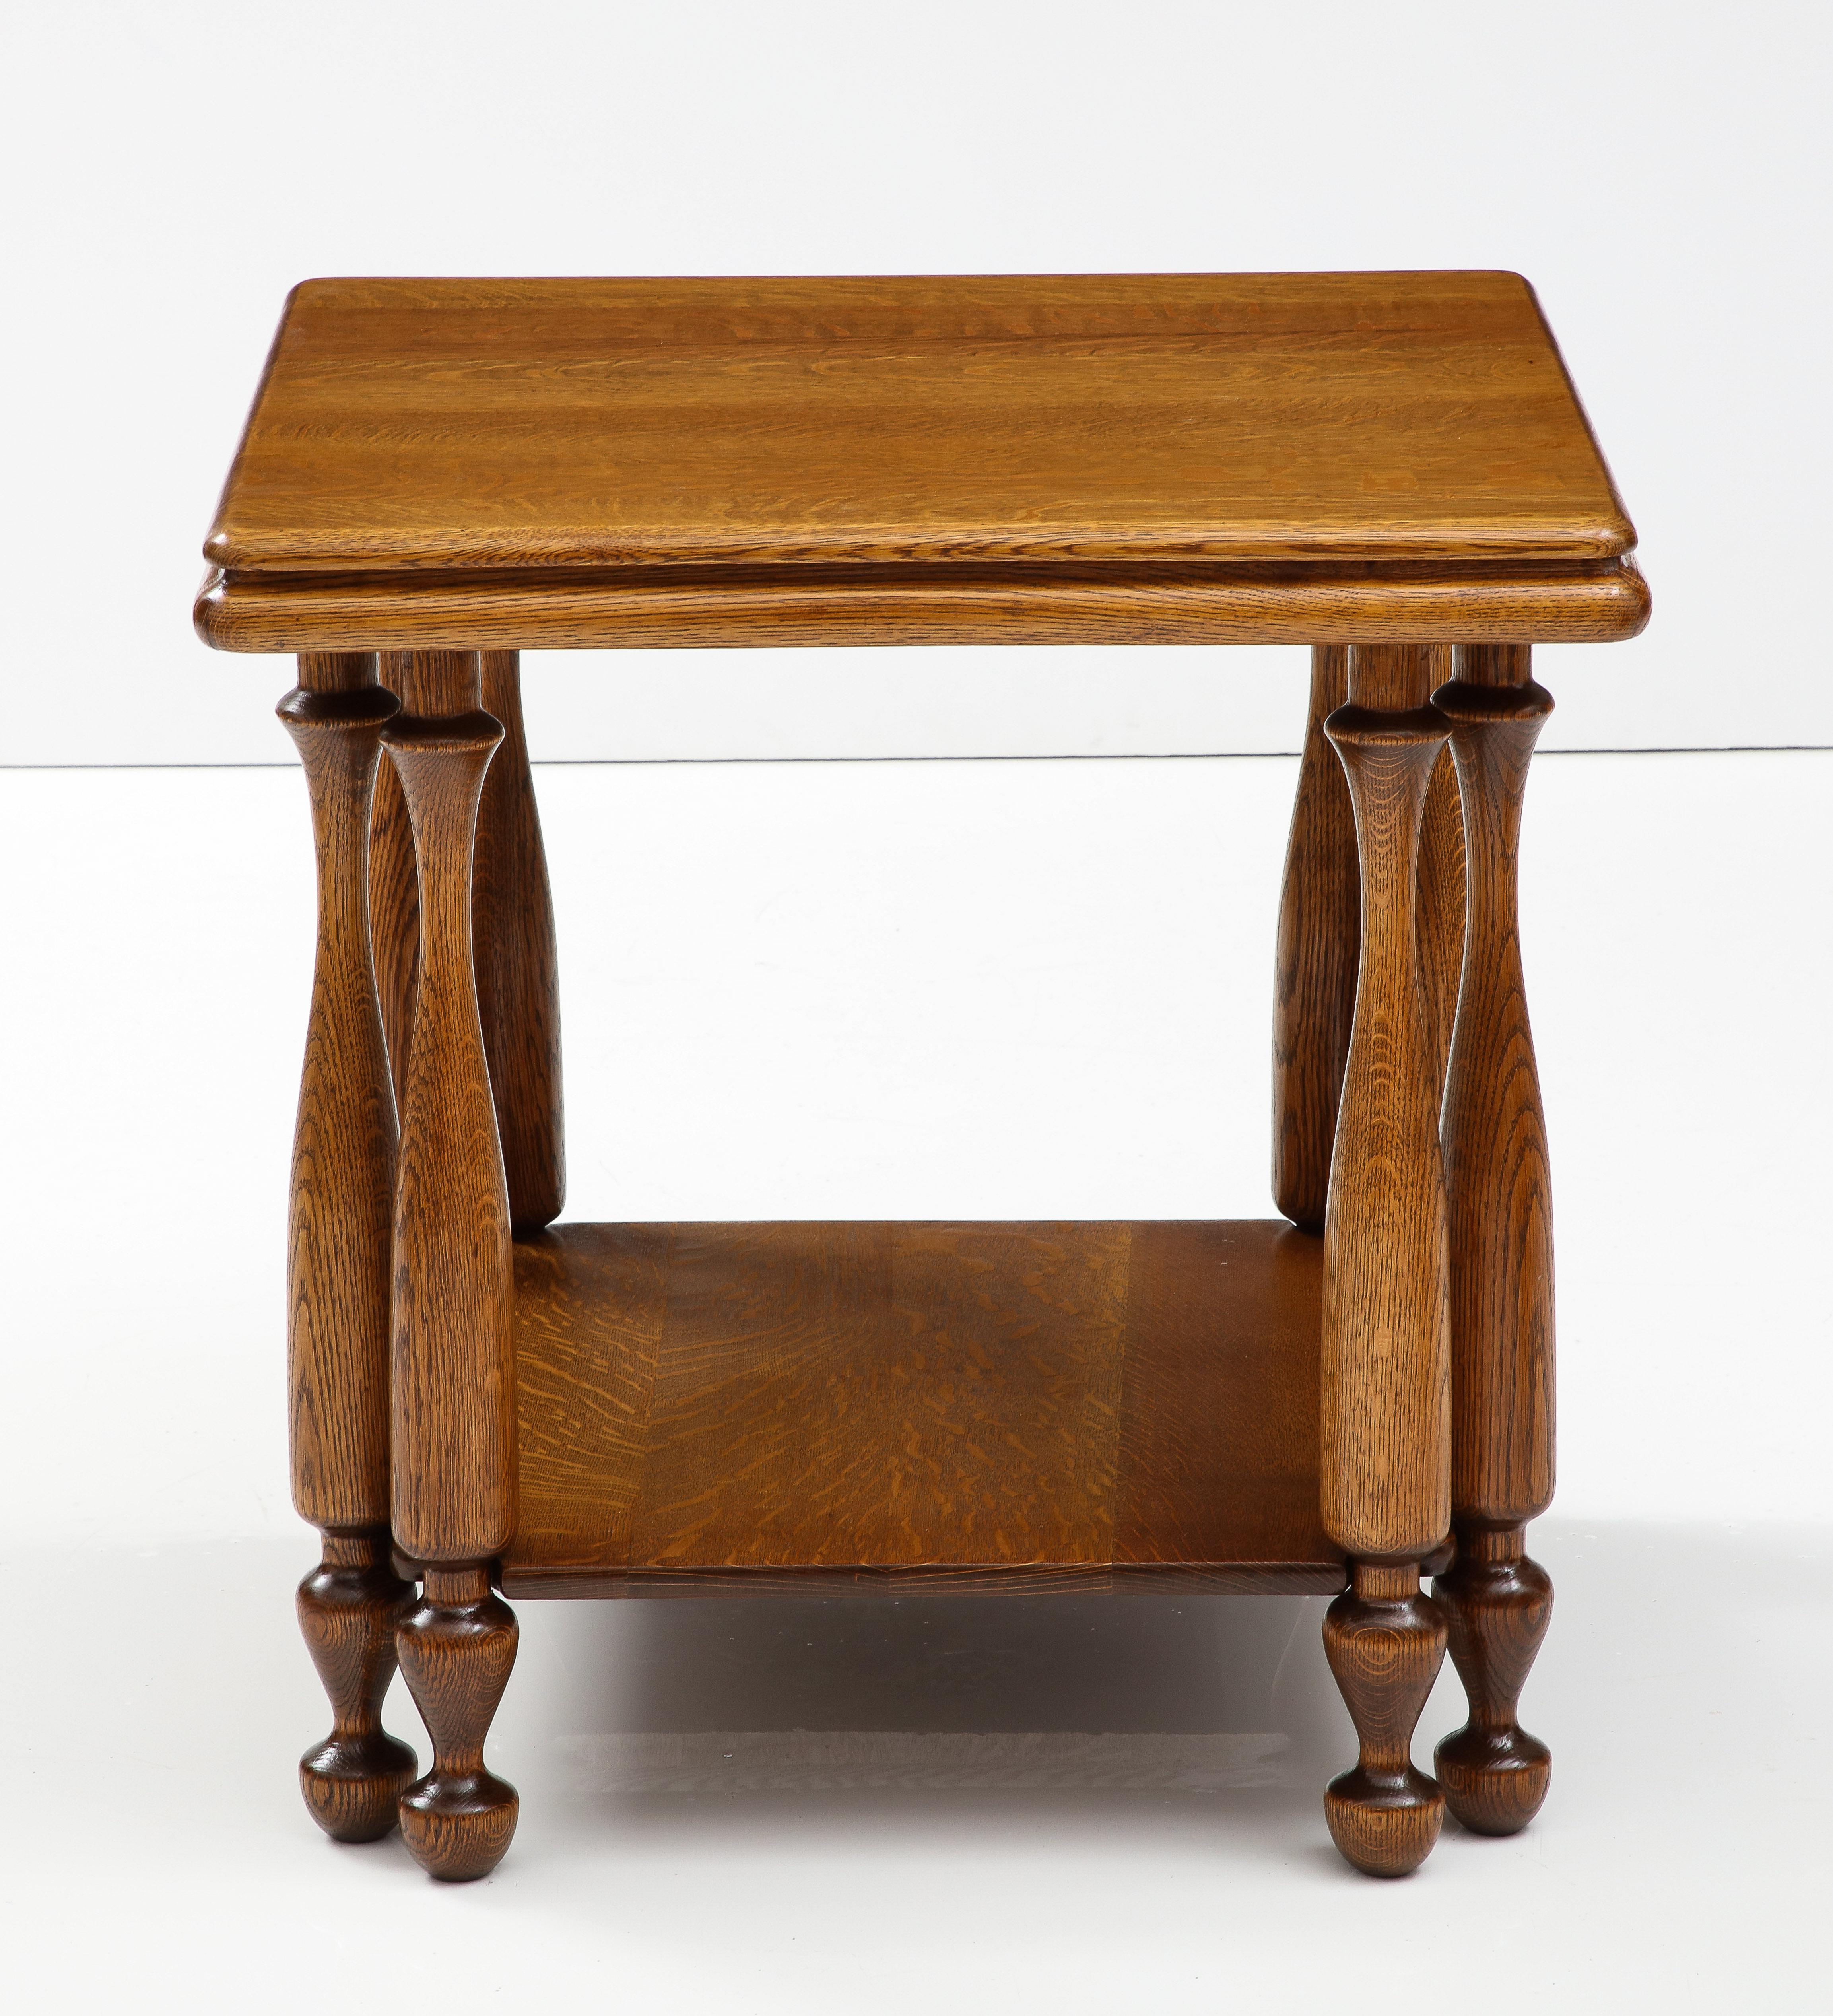 1940's Große zweistöckige Eiche Französisch Ende / Spieltisch mit geschnitzten Doppelbeine, leicht mit geringem Verschleiß und Patina aufgrund von Alter und Nutzung restauriert.